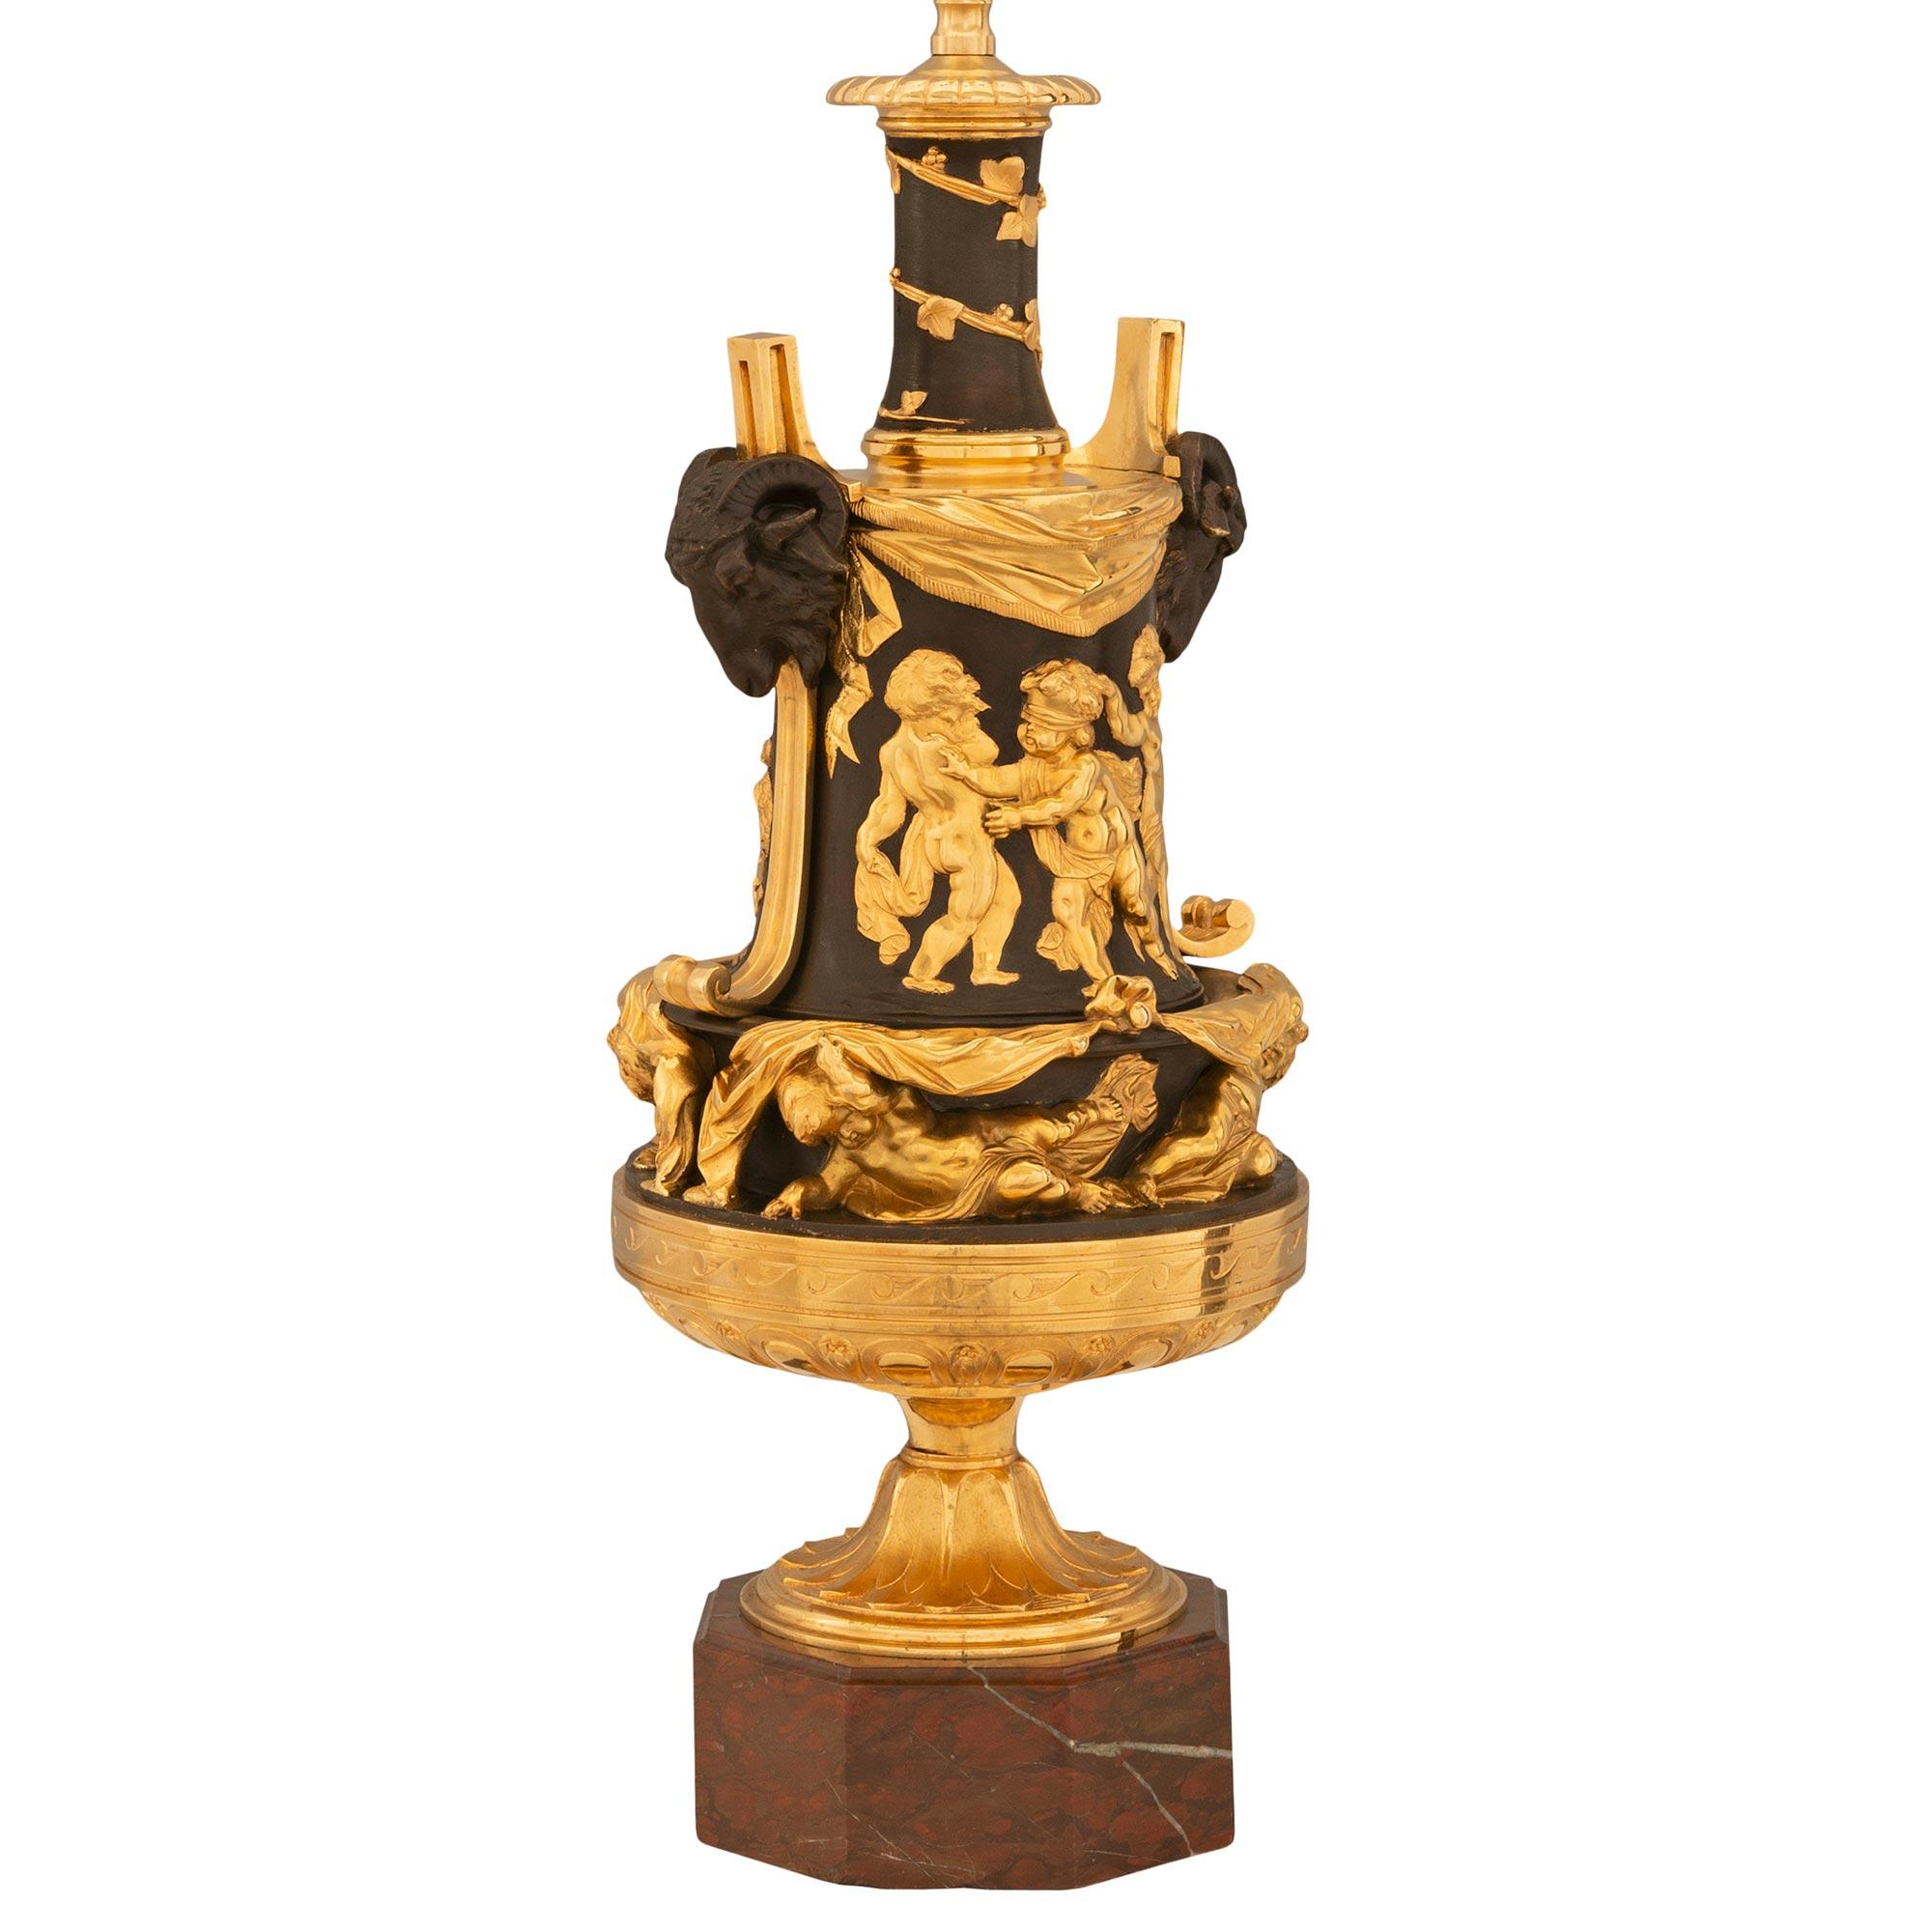 Magnifique et unique paire de lampes en bronze doré, bronze patiné et marbre Rouge Griotte de style Louis XVI du XIXe siècle. Chaque lampe est surmontée d'une remarquable base octogonale en marbre Rouge Griotte, avec une fine bordure tachetée et un